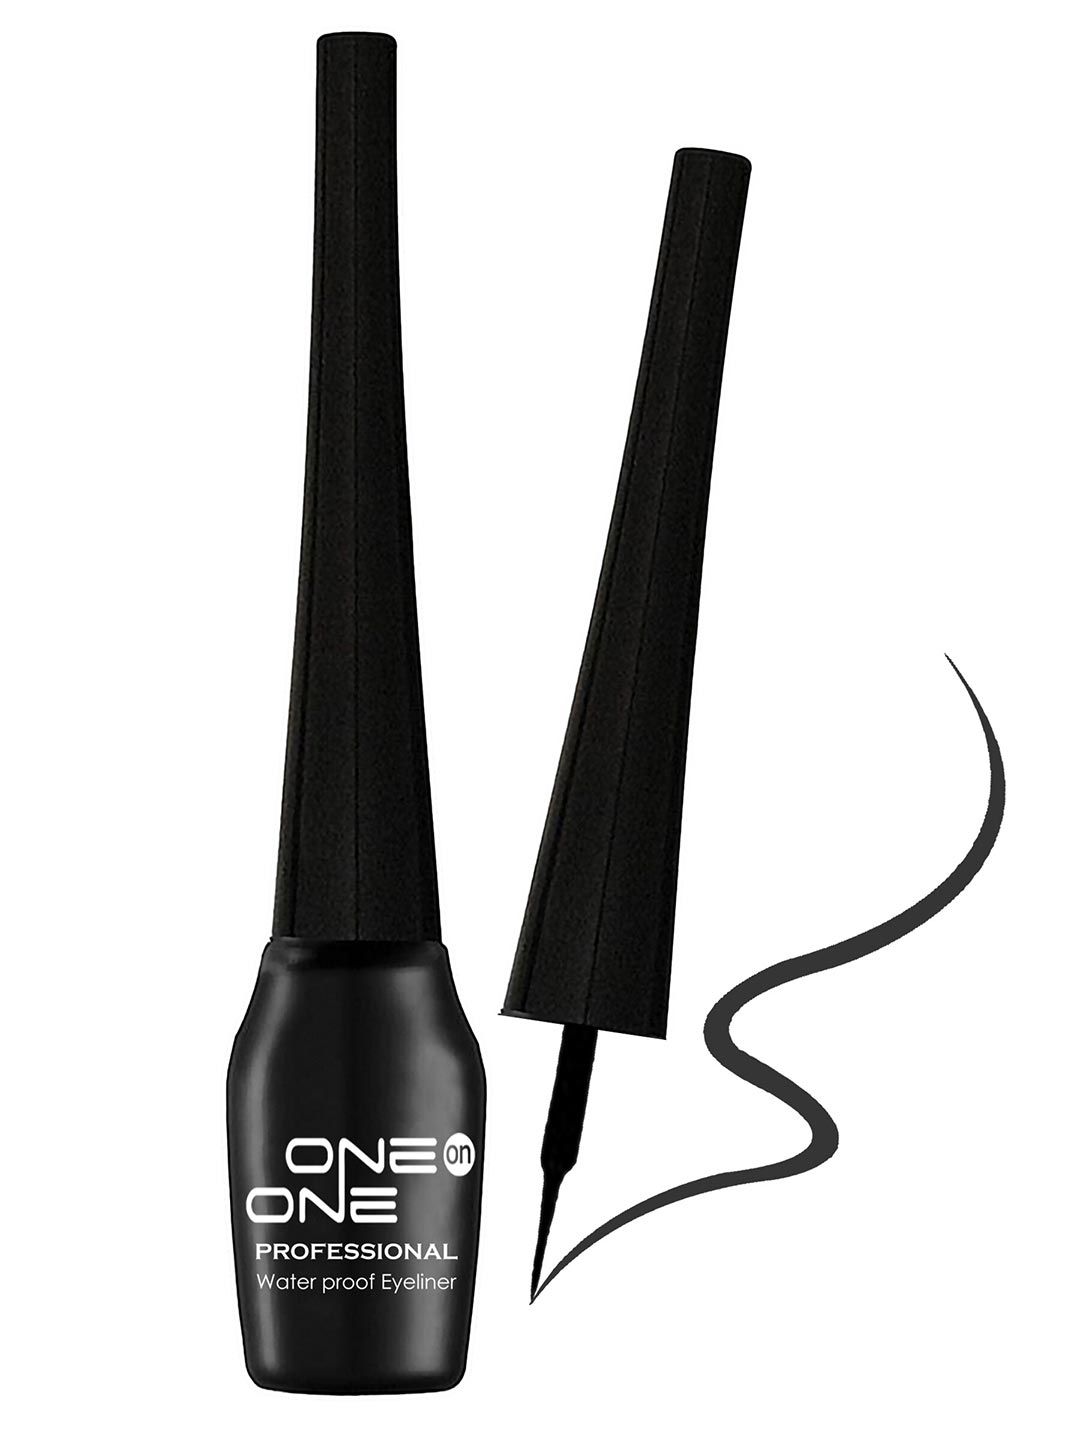 ONE on ONE Black Waterproof Eyeliner - 5 ml Price in India